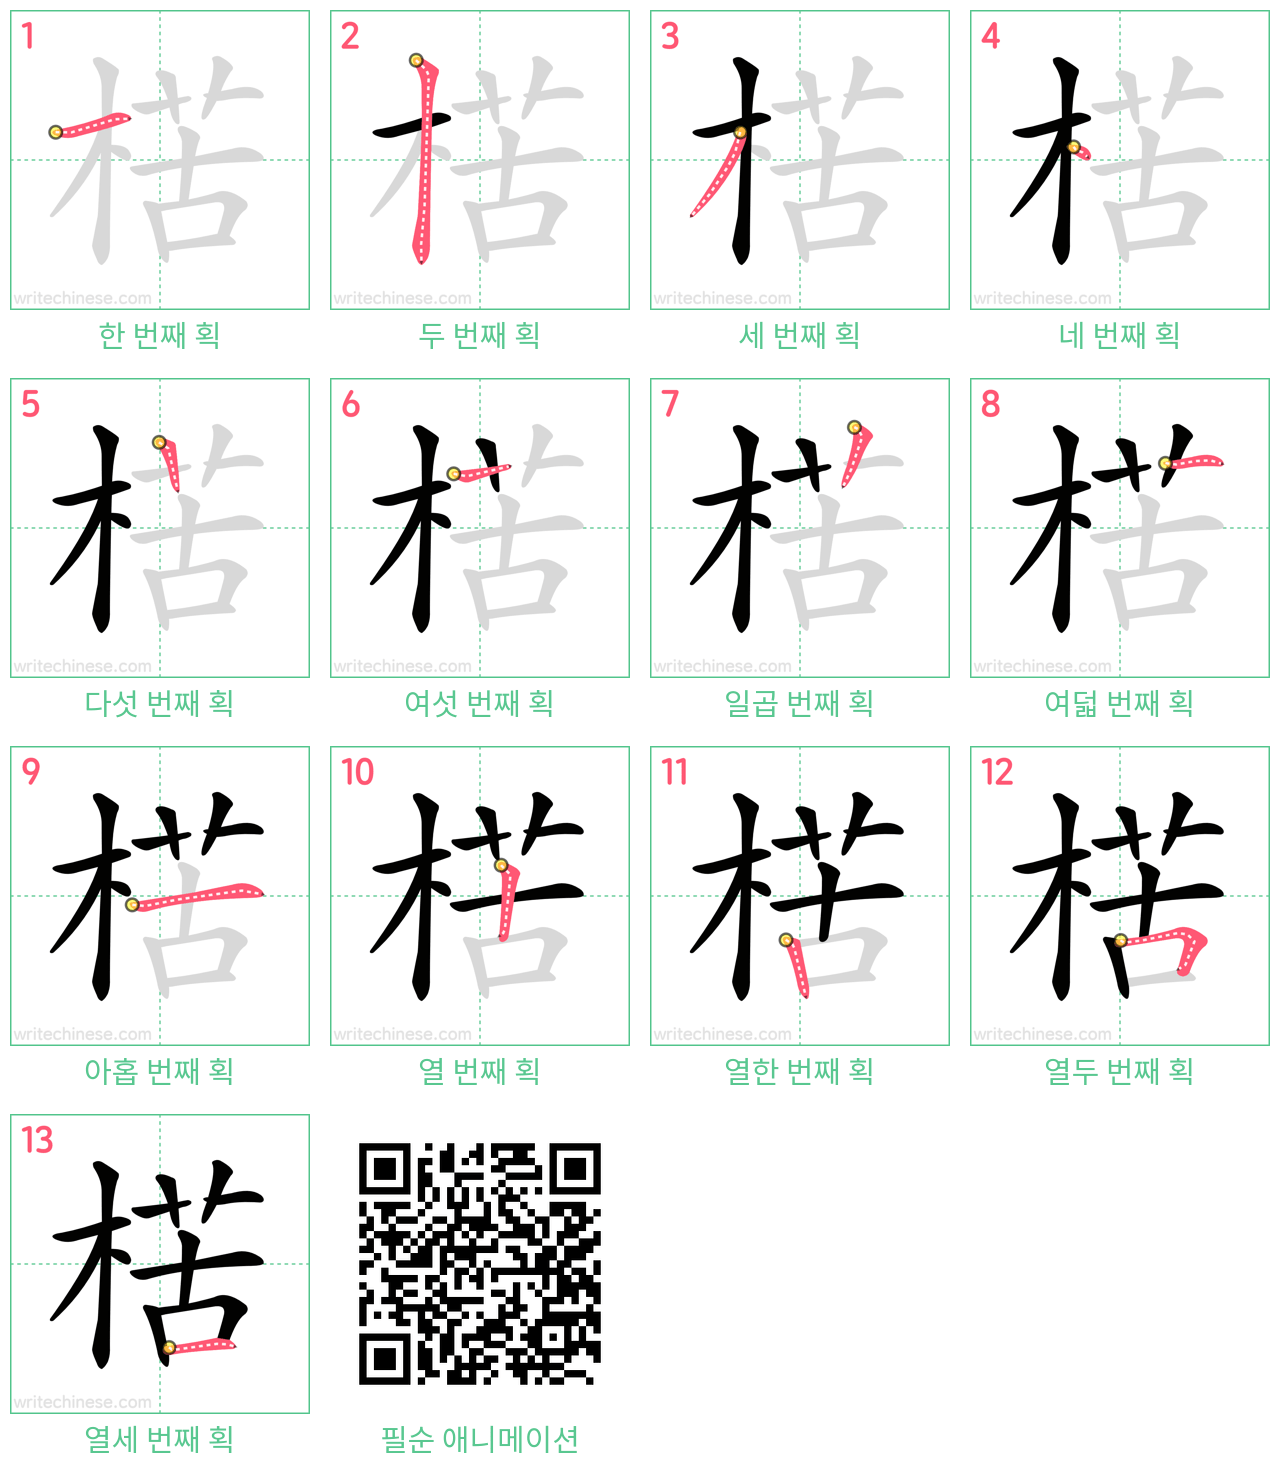 楛 step-by-step stroke order diagrams